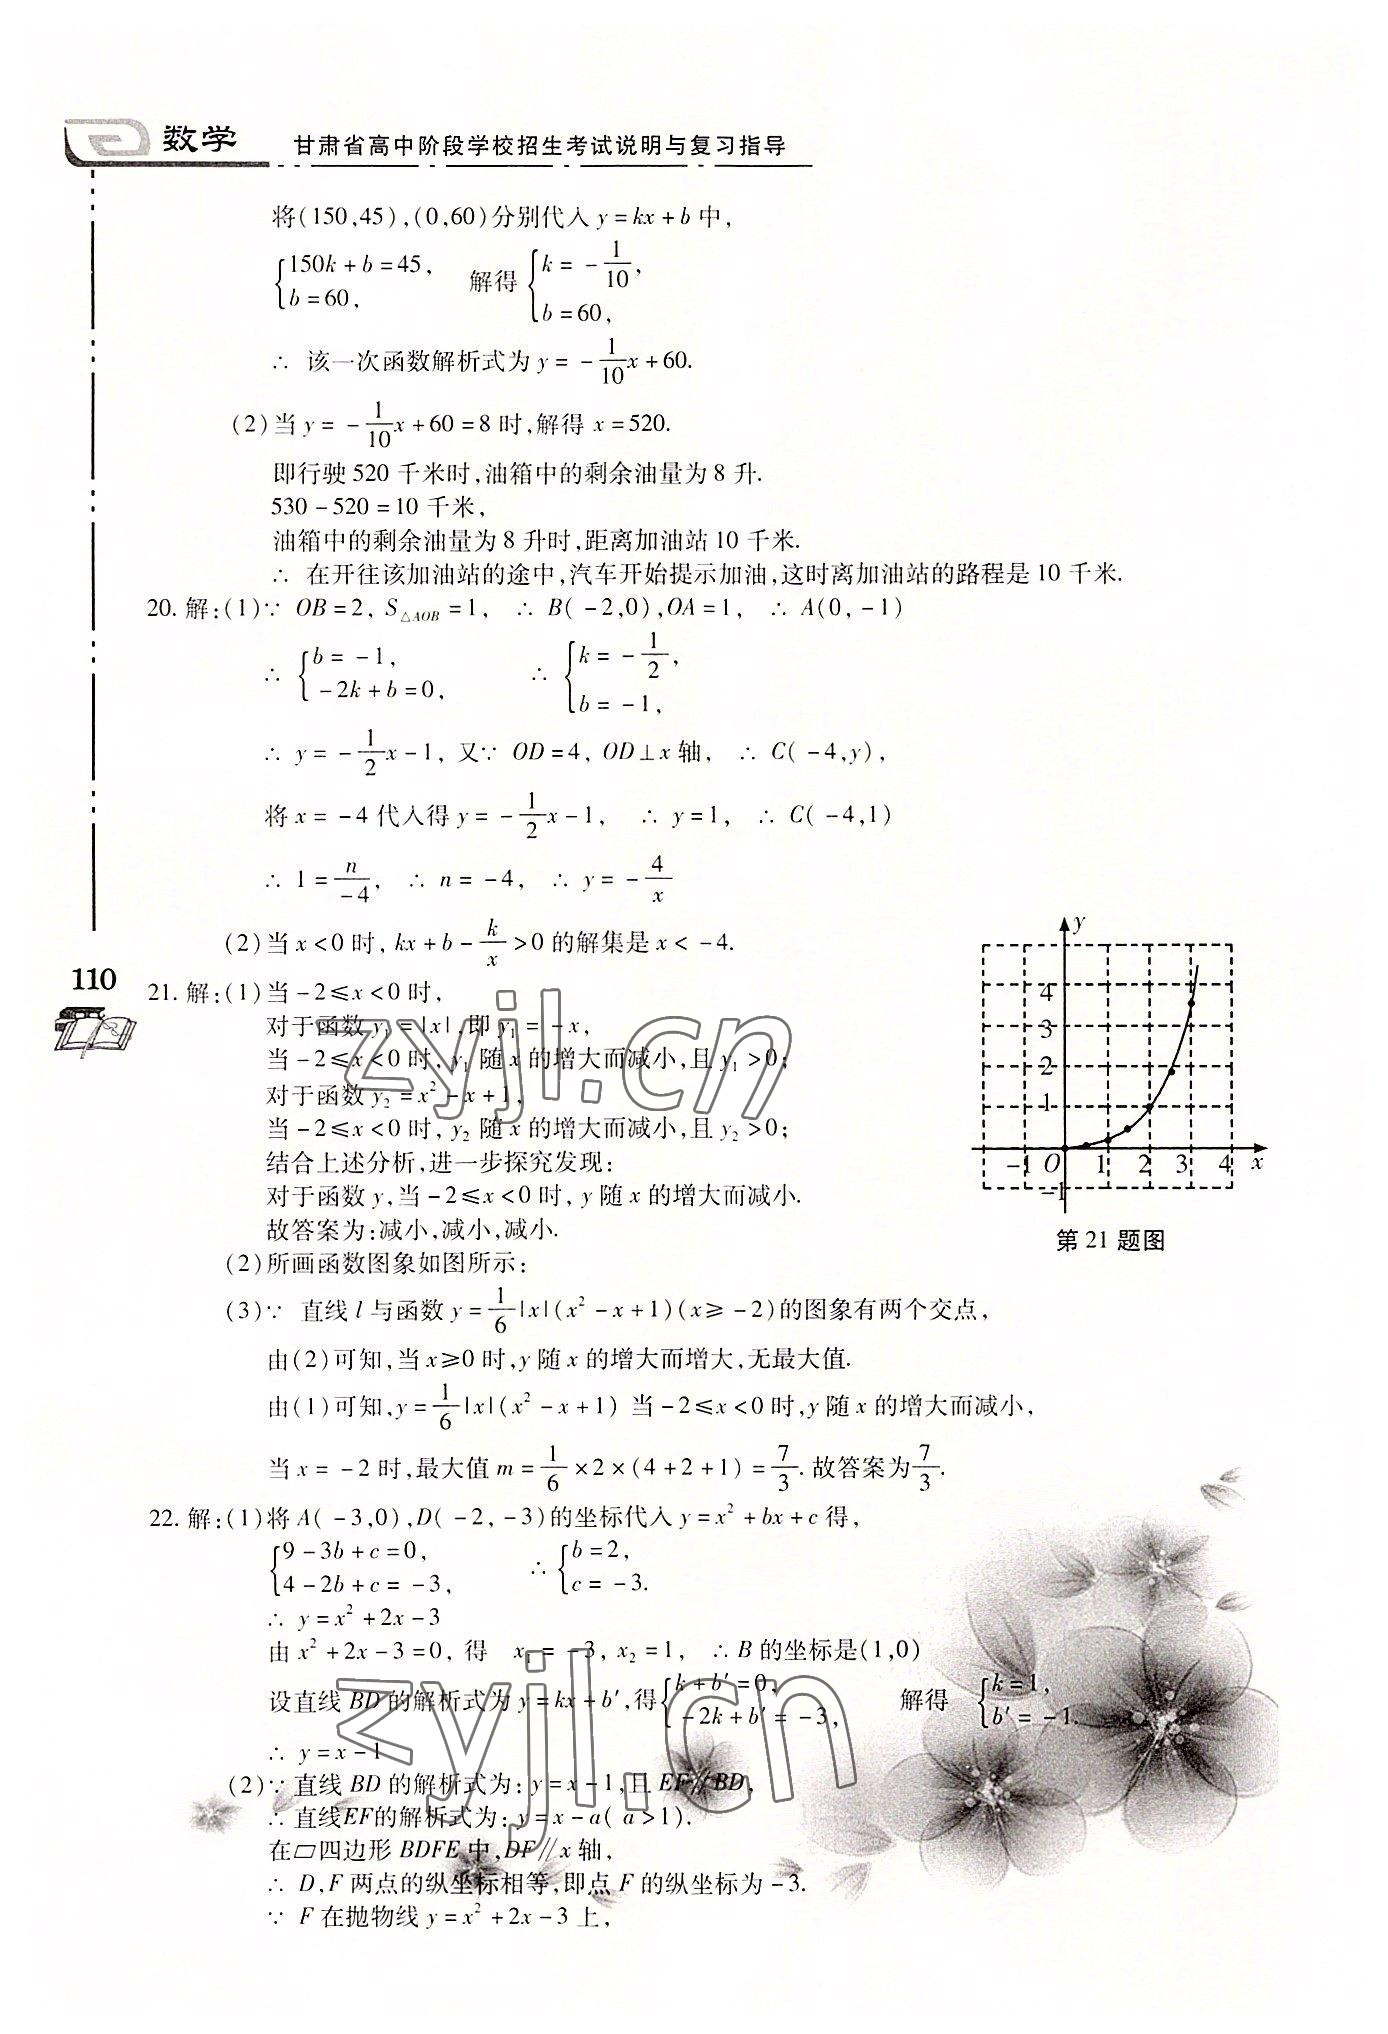 2022年甘肃省高中阶段学校招生考试说明与复习指导数学 第4页